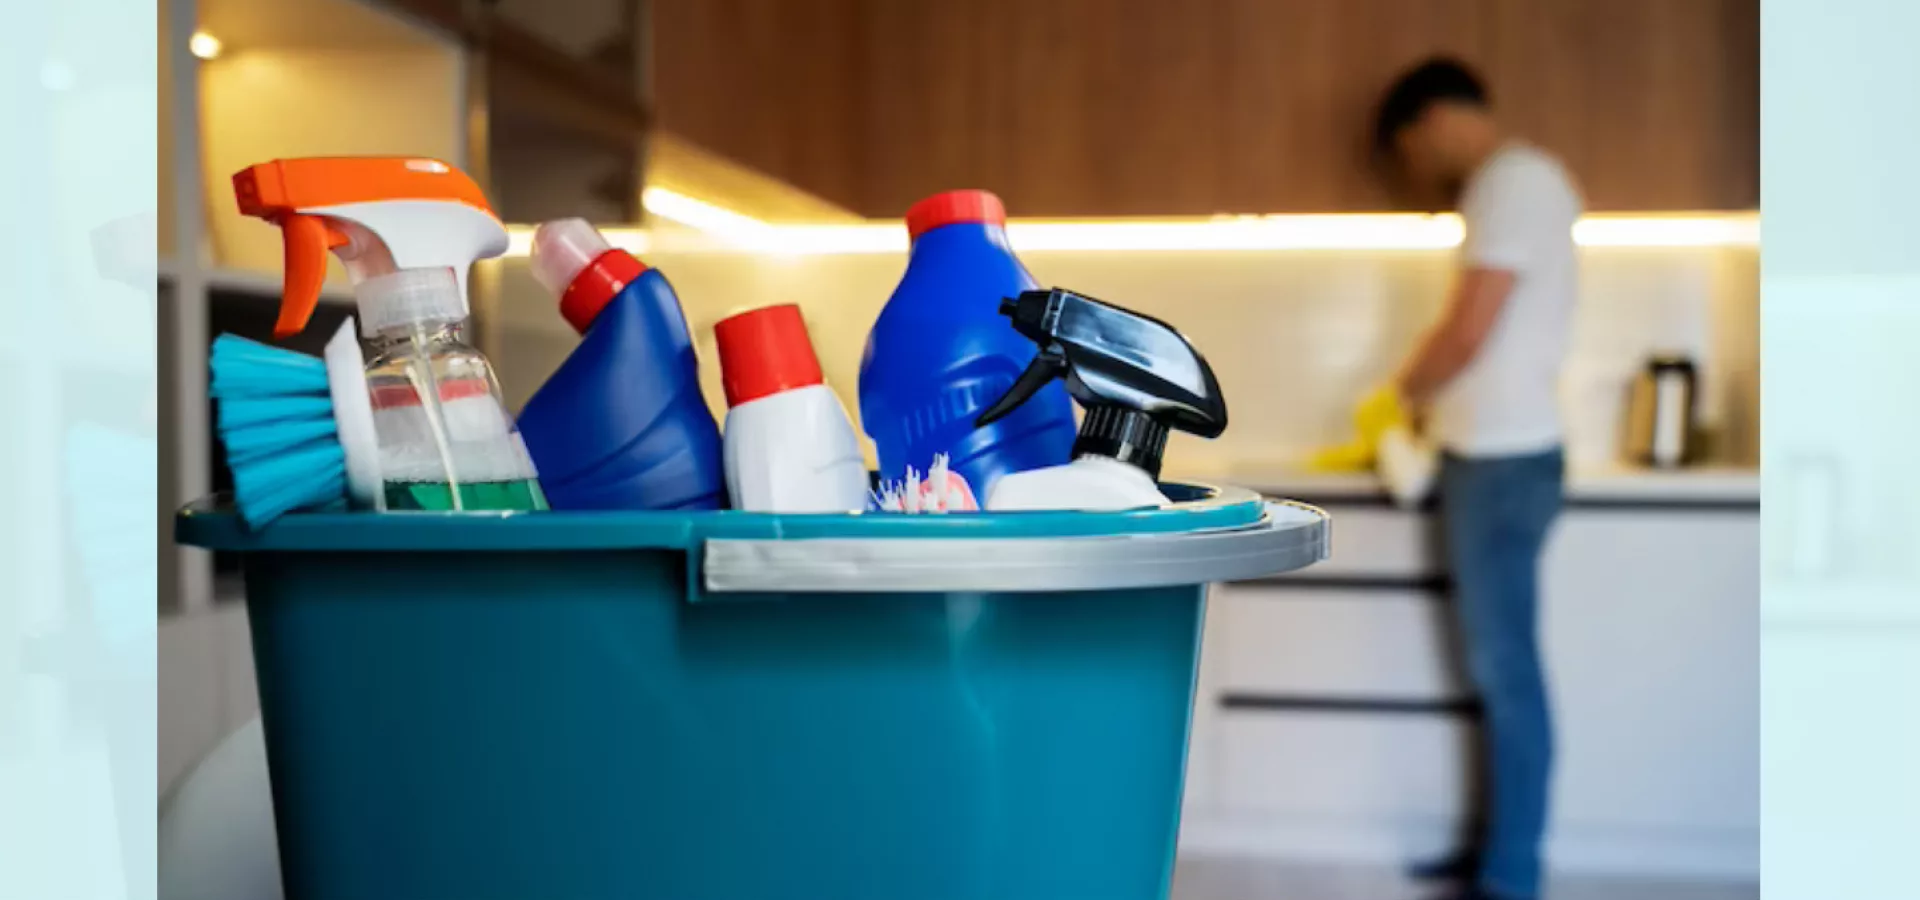 Razones por las que debes hacer la limpieza profunda de tus muebles